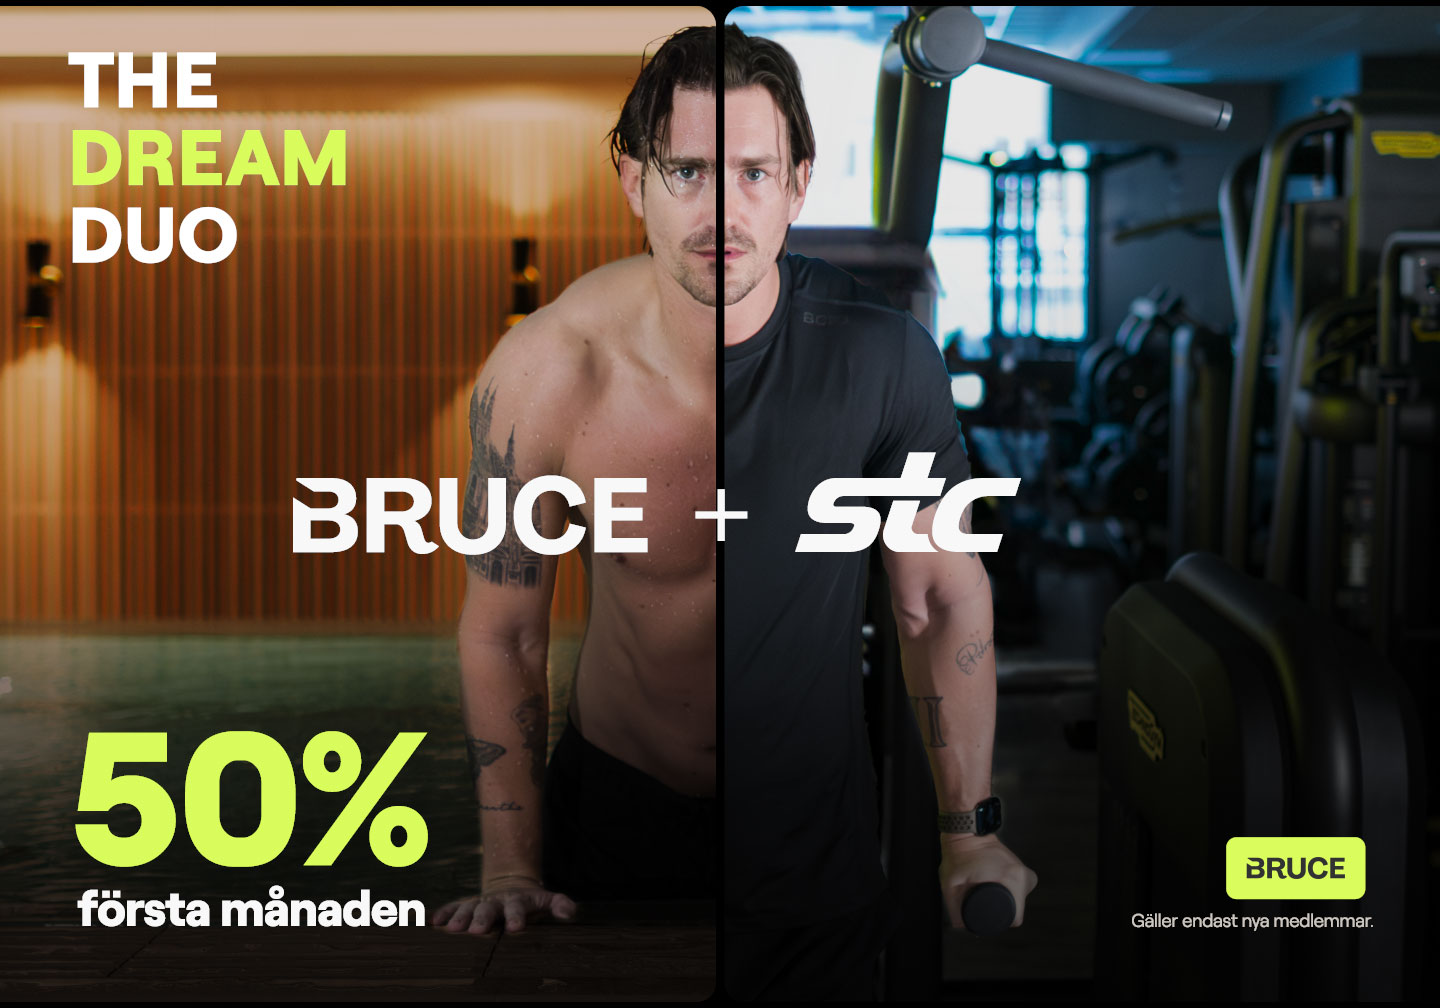 Homage och Mirage skapar nordisk kampanj för träningsappen Bruce